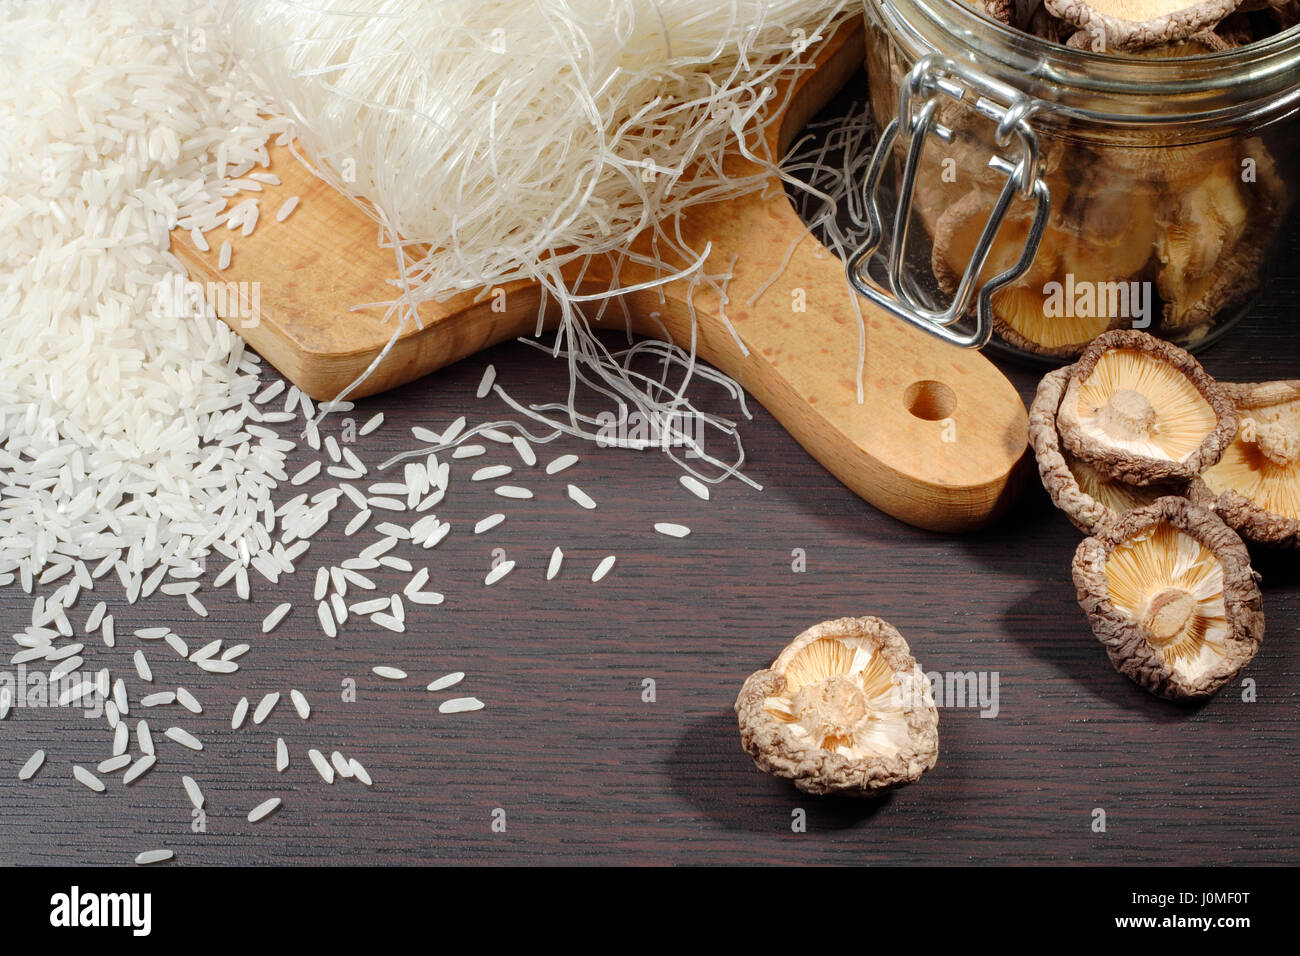 La vie toujours avec des champignons shiitake (Poku) (Lentinus edodes), riz et céréales Riz nodles. Banque D'Images